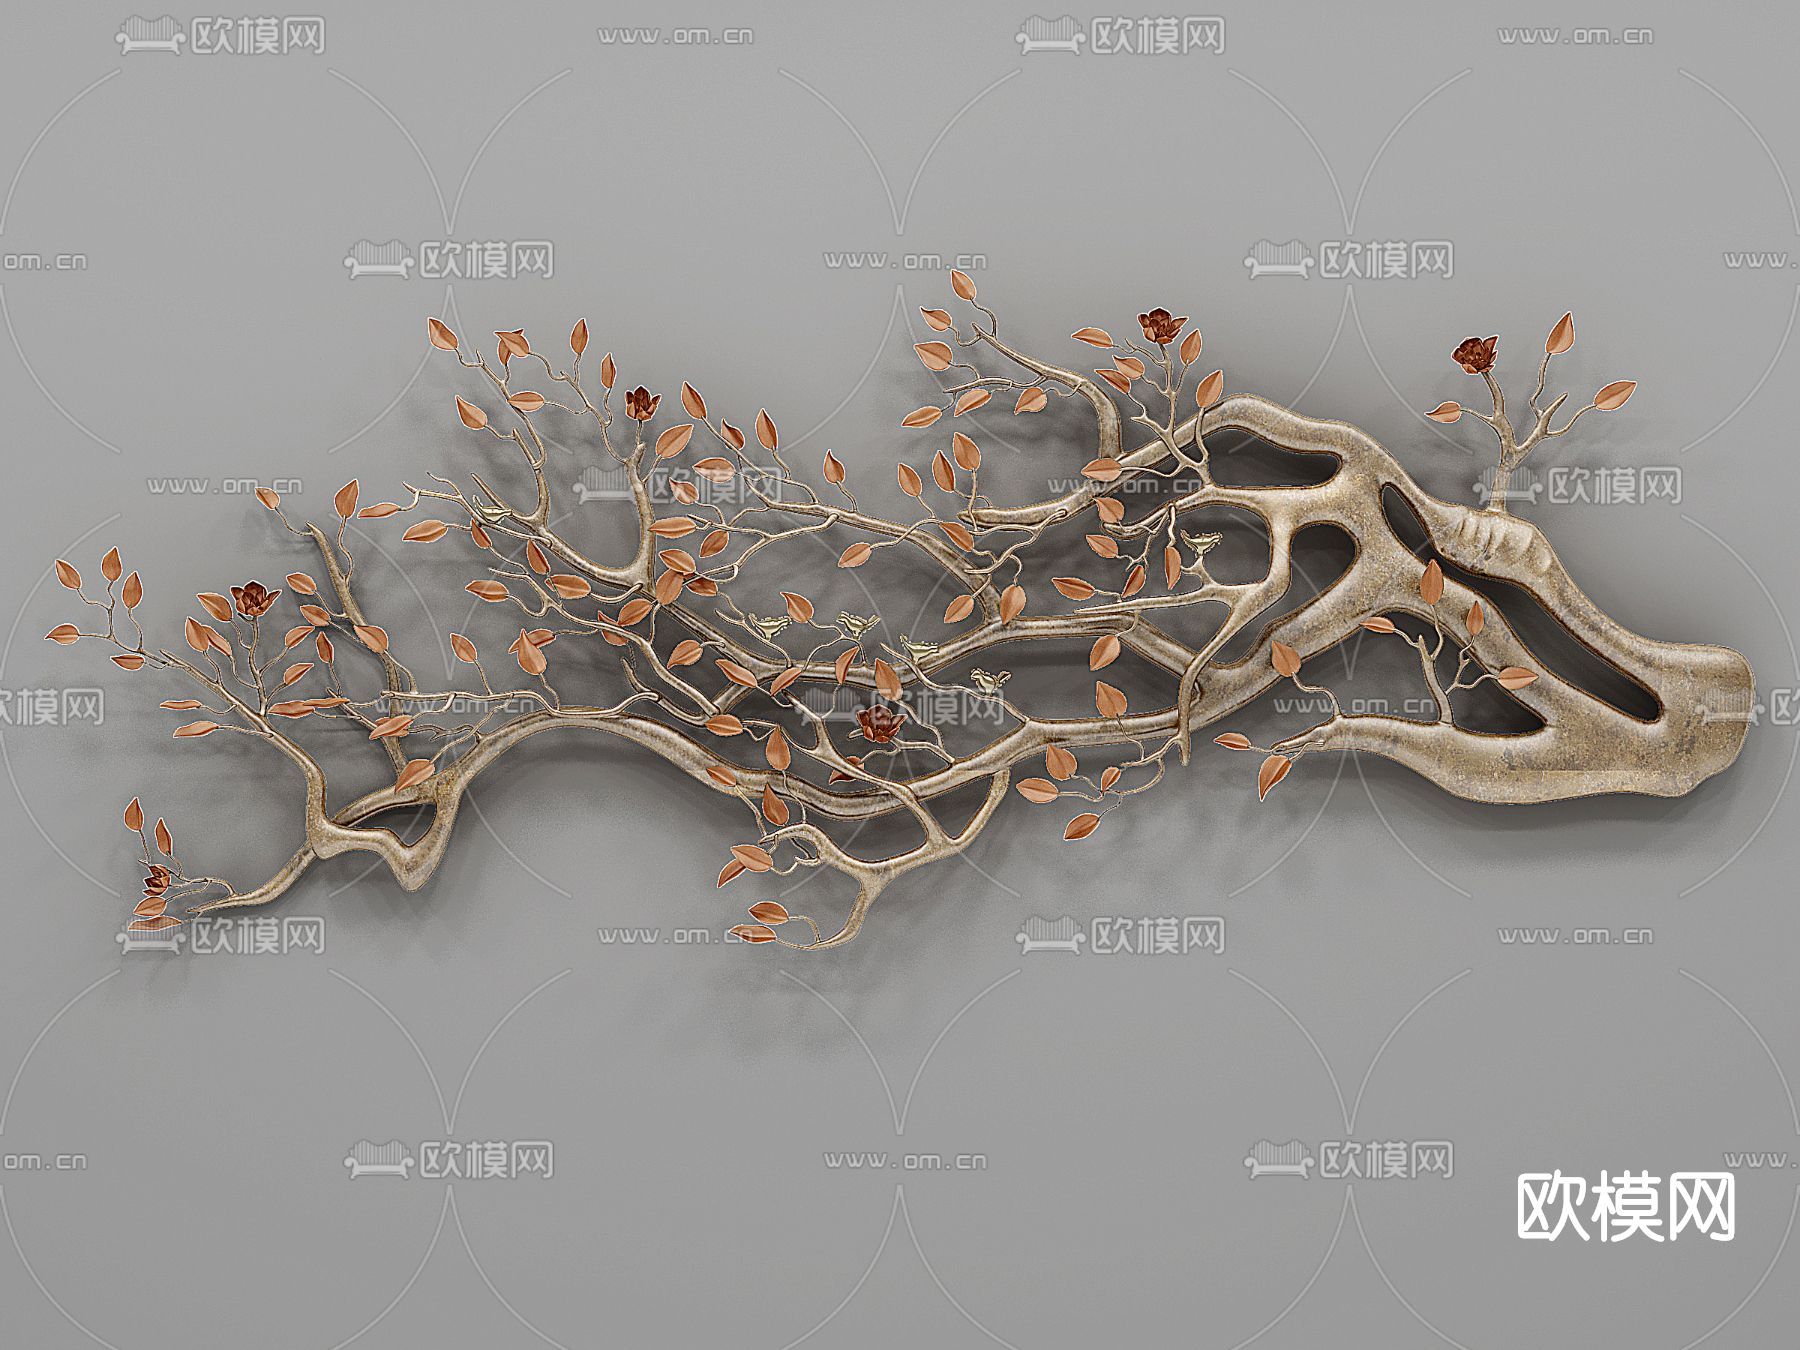 现代树枝造型3D模型下载【ID:366389697】_知末3d模型网